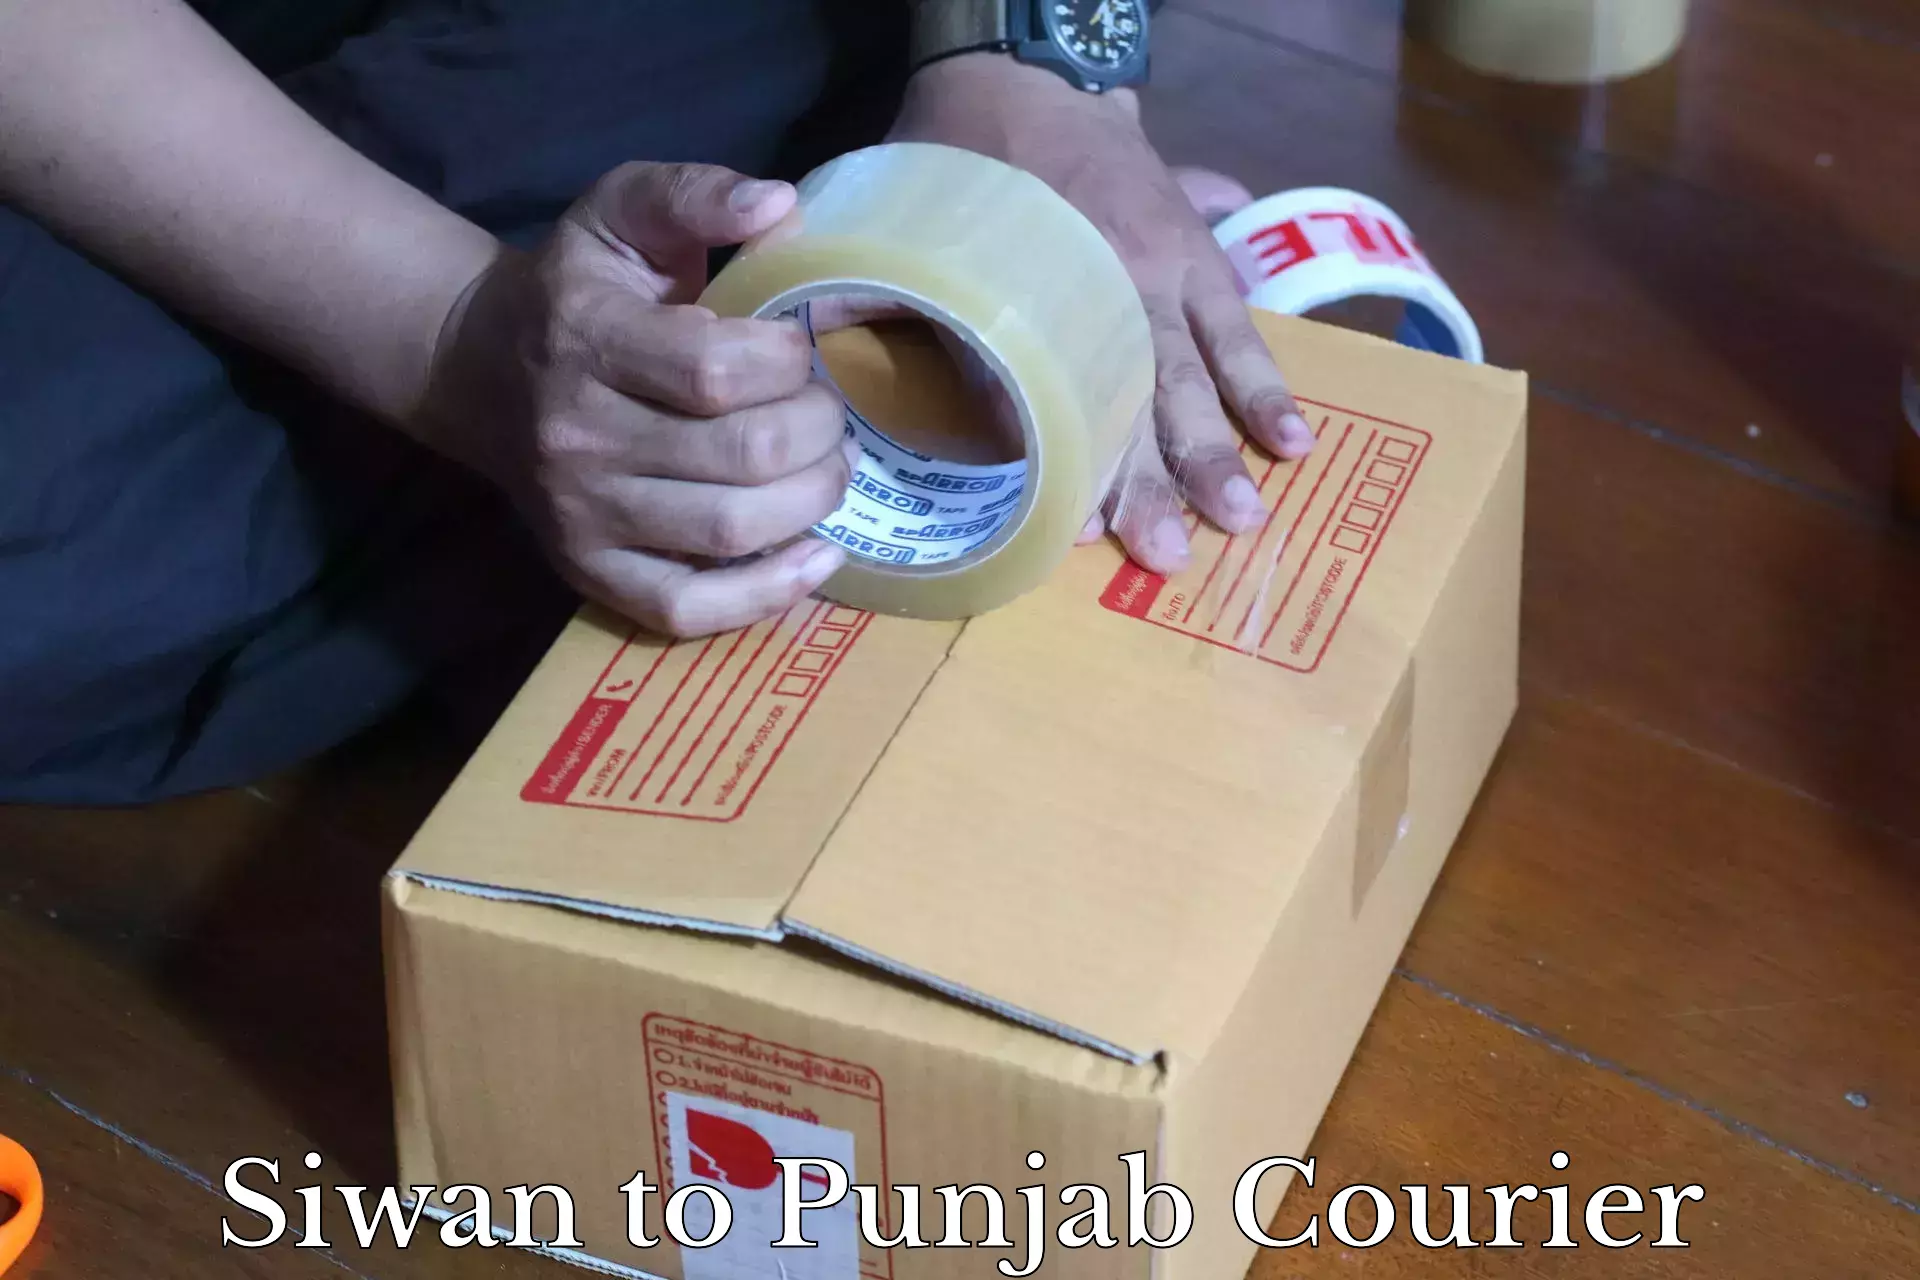 International parcel service Siwan to IIT Ropar